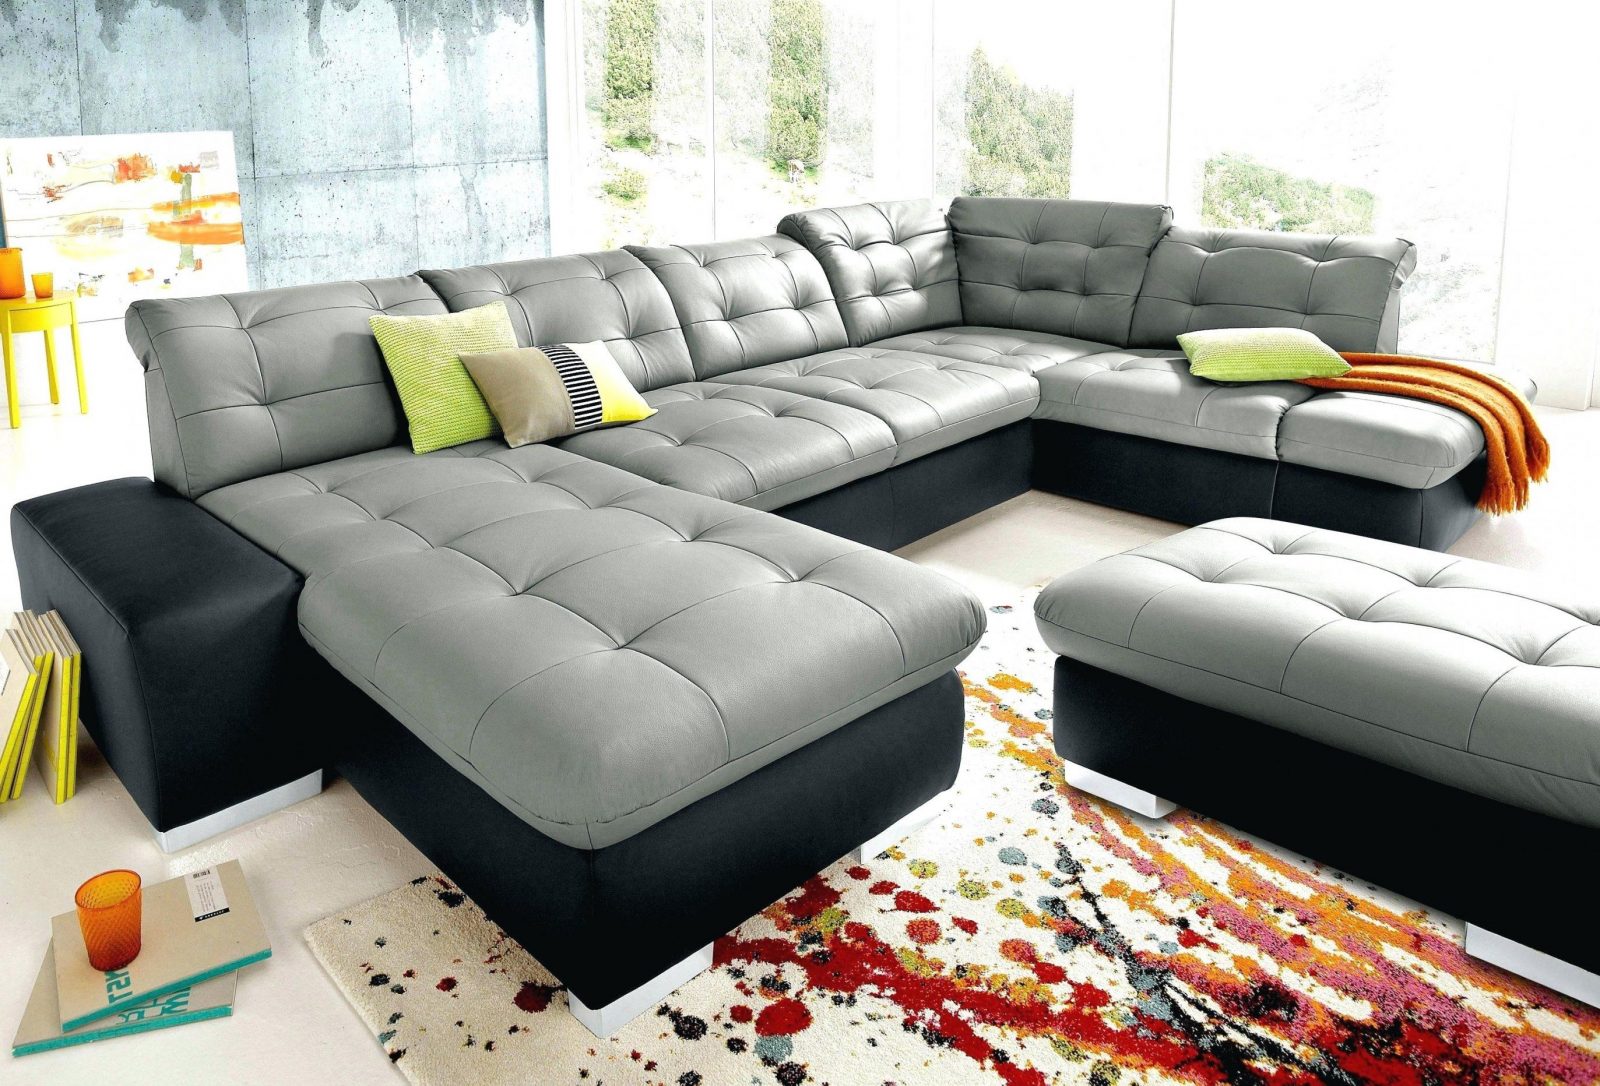 New Wohnlandschaft Xxl U Form Mit Sofa Lovely Edle Design Mega Big von Wohnlandschaft Xxl U Form Photo